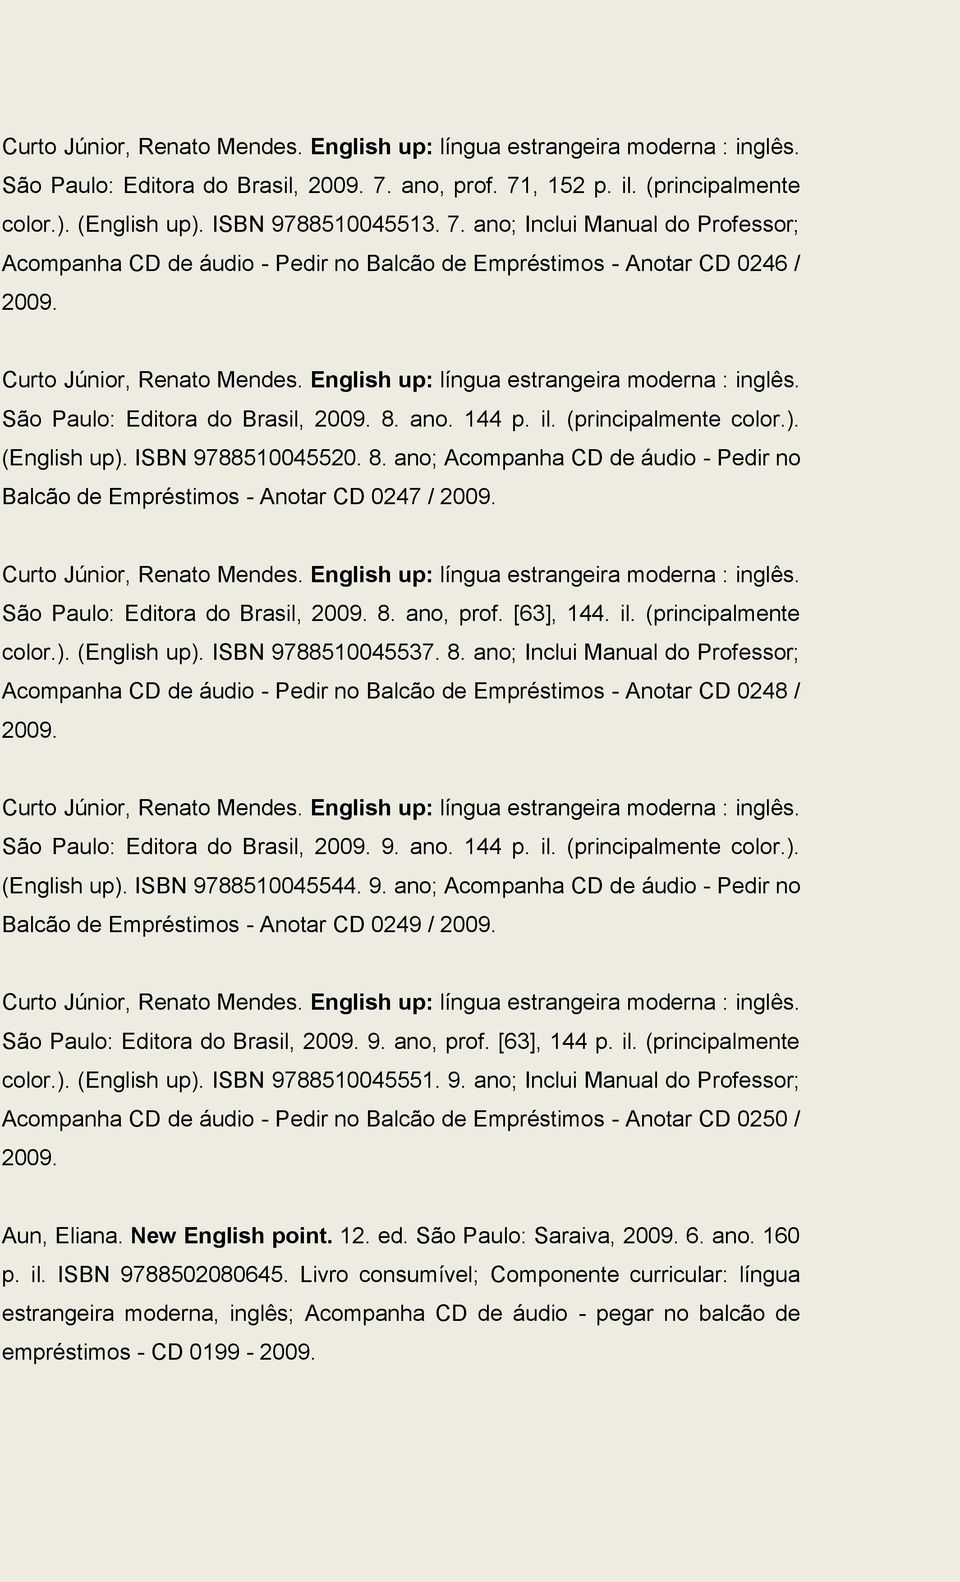 English up: língua estrangeira moderna : inglês. São Paulo: Editora do Brasil, 2009. 8. ano. 144 p. il. (principalmente color.). (English up). ISBN 9788510045520. 8. ano; Acompanha CD de áudio - Pedir no Balcão de Empréstimos - Anotar CD 0247 / 2009.